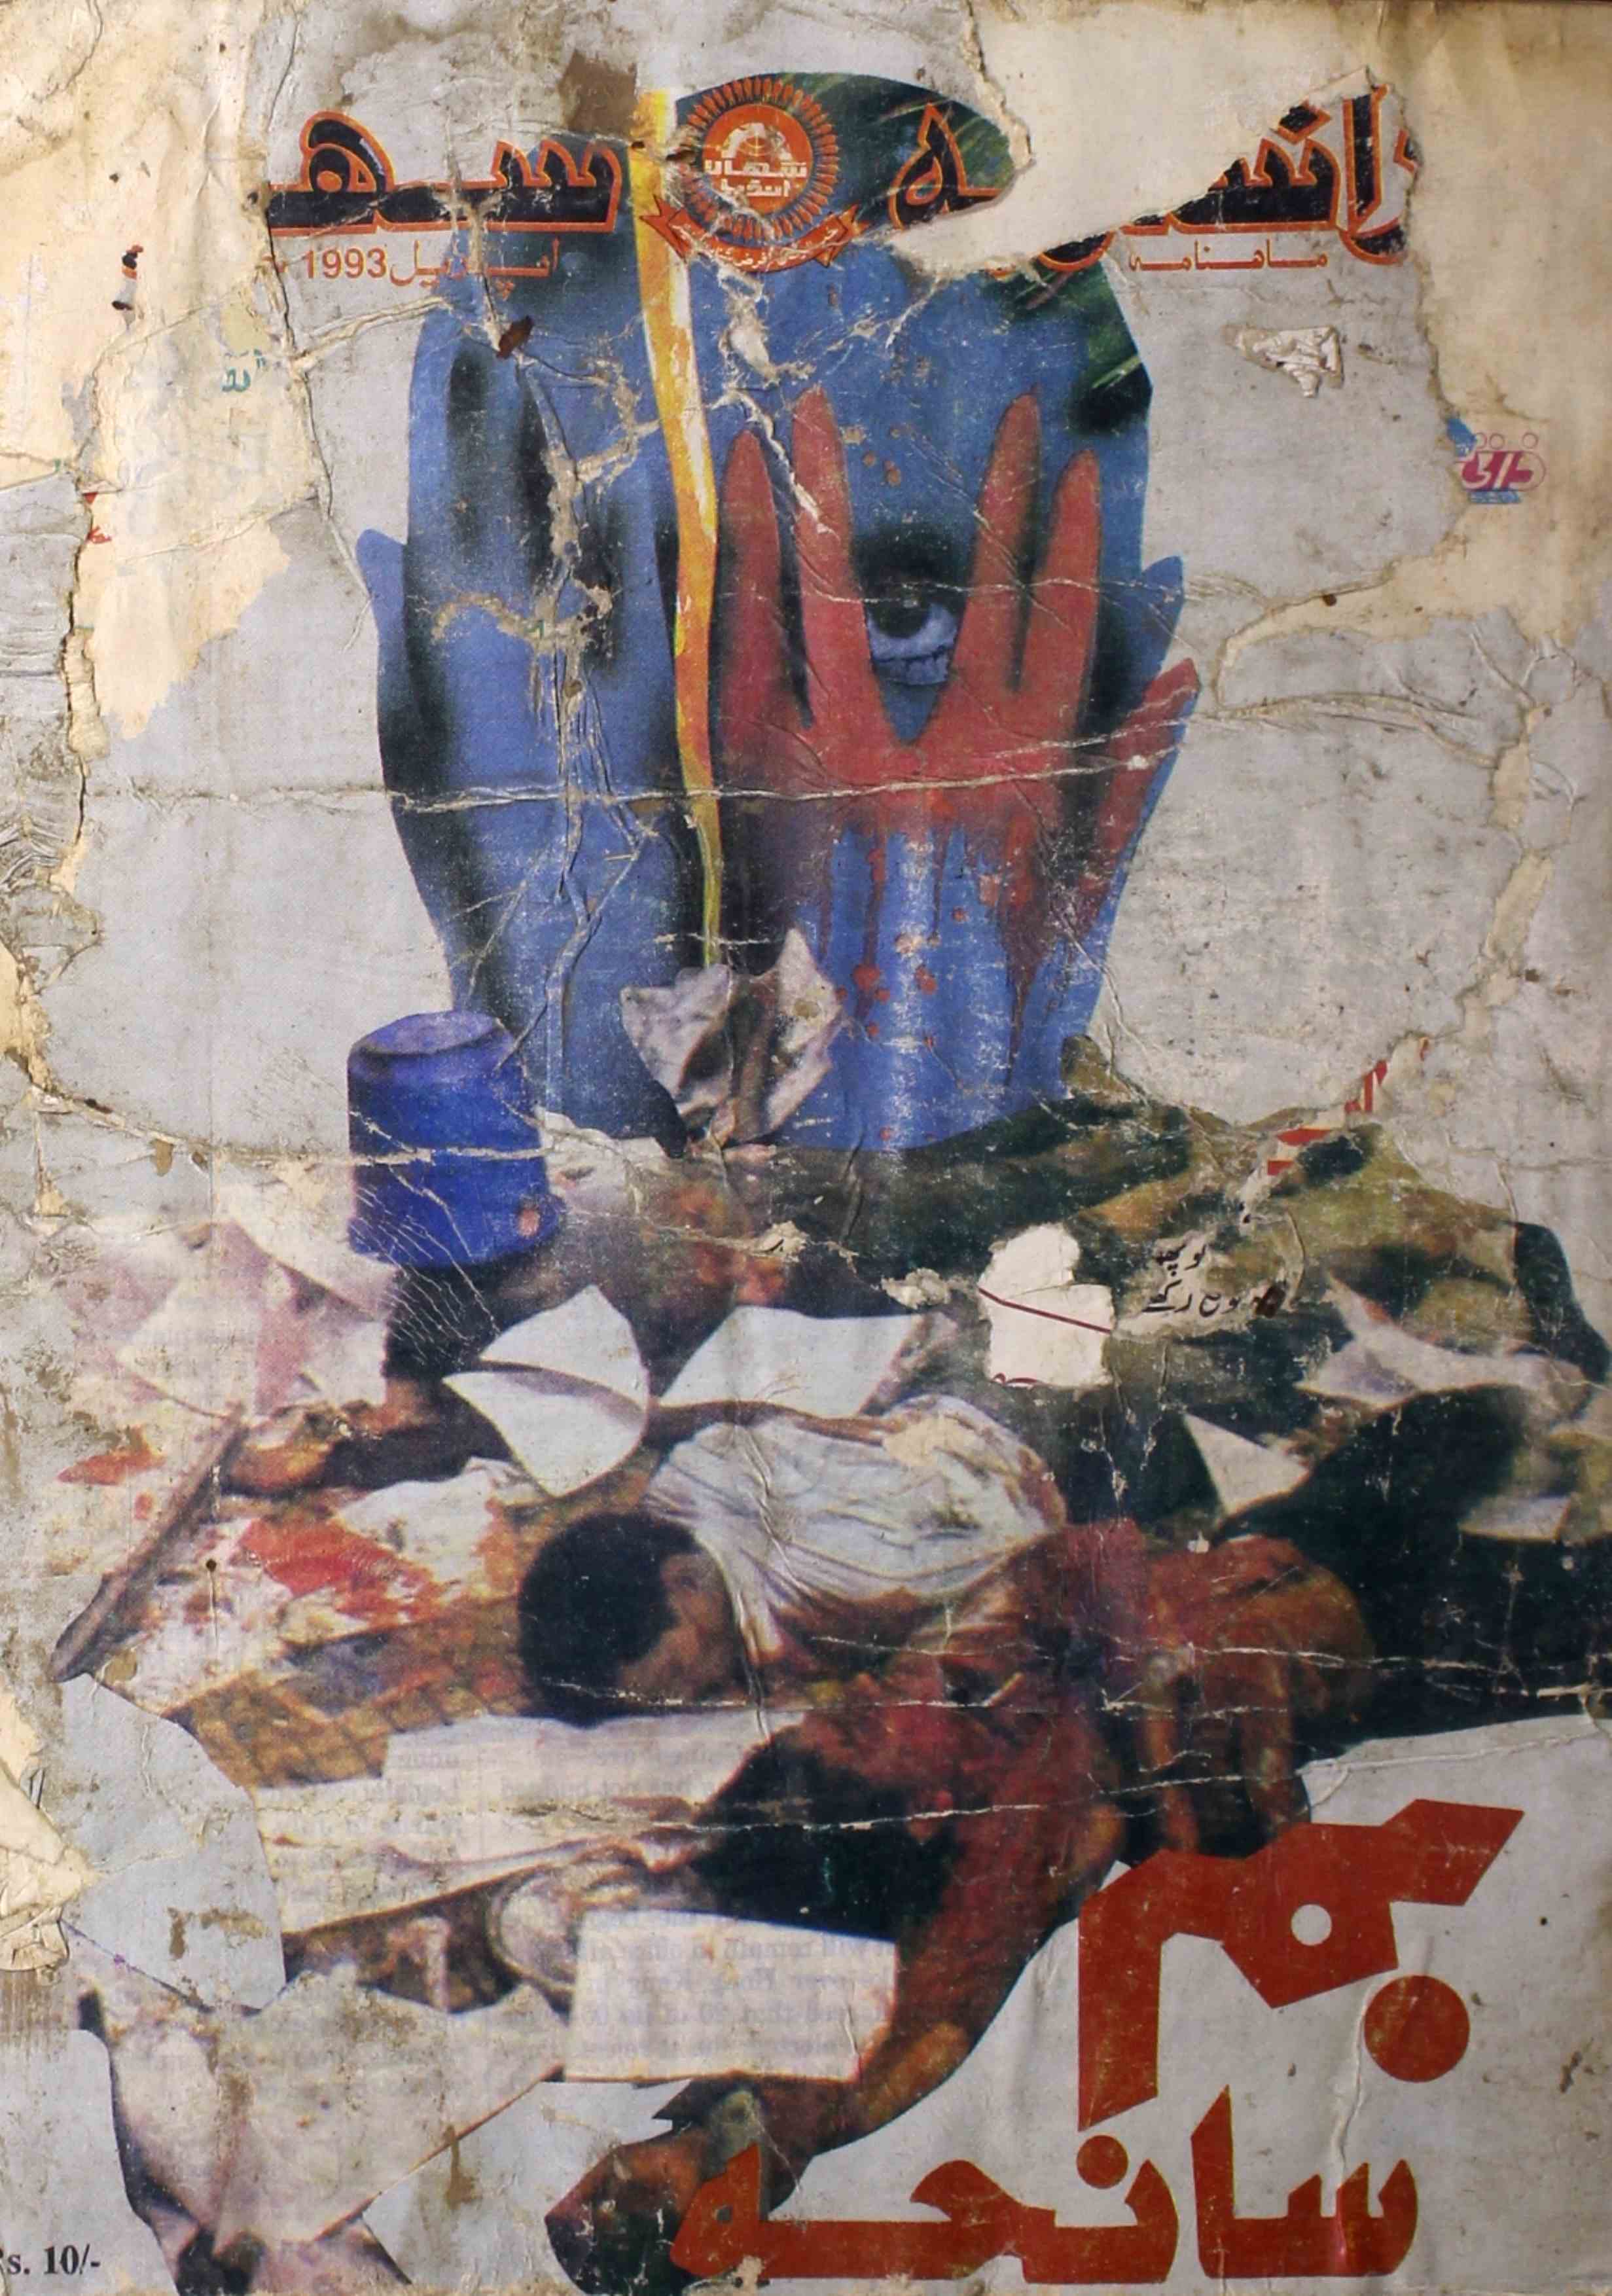 Rashtriya Sahara Jild 2 Shumara 5 April 1993-Svk-Shumara Number-005